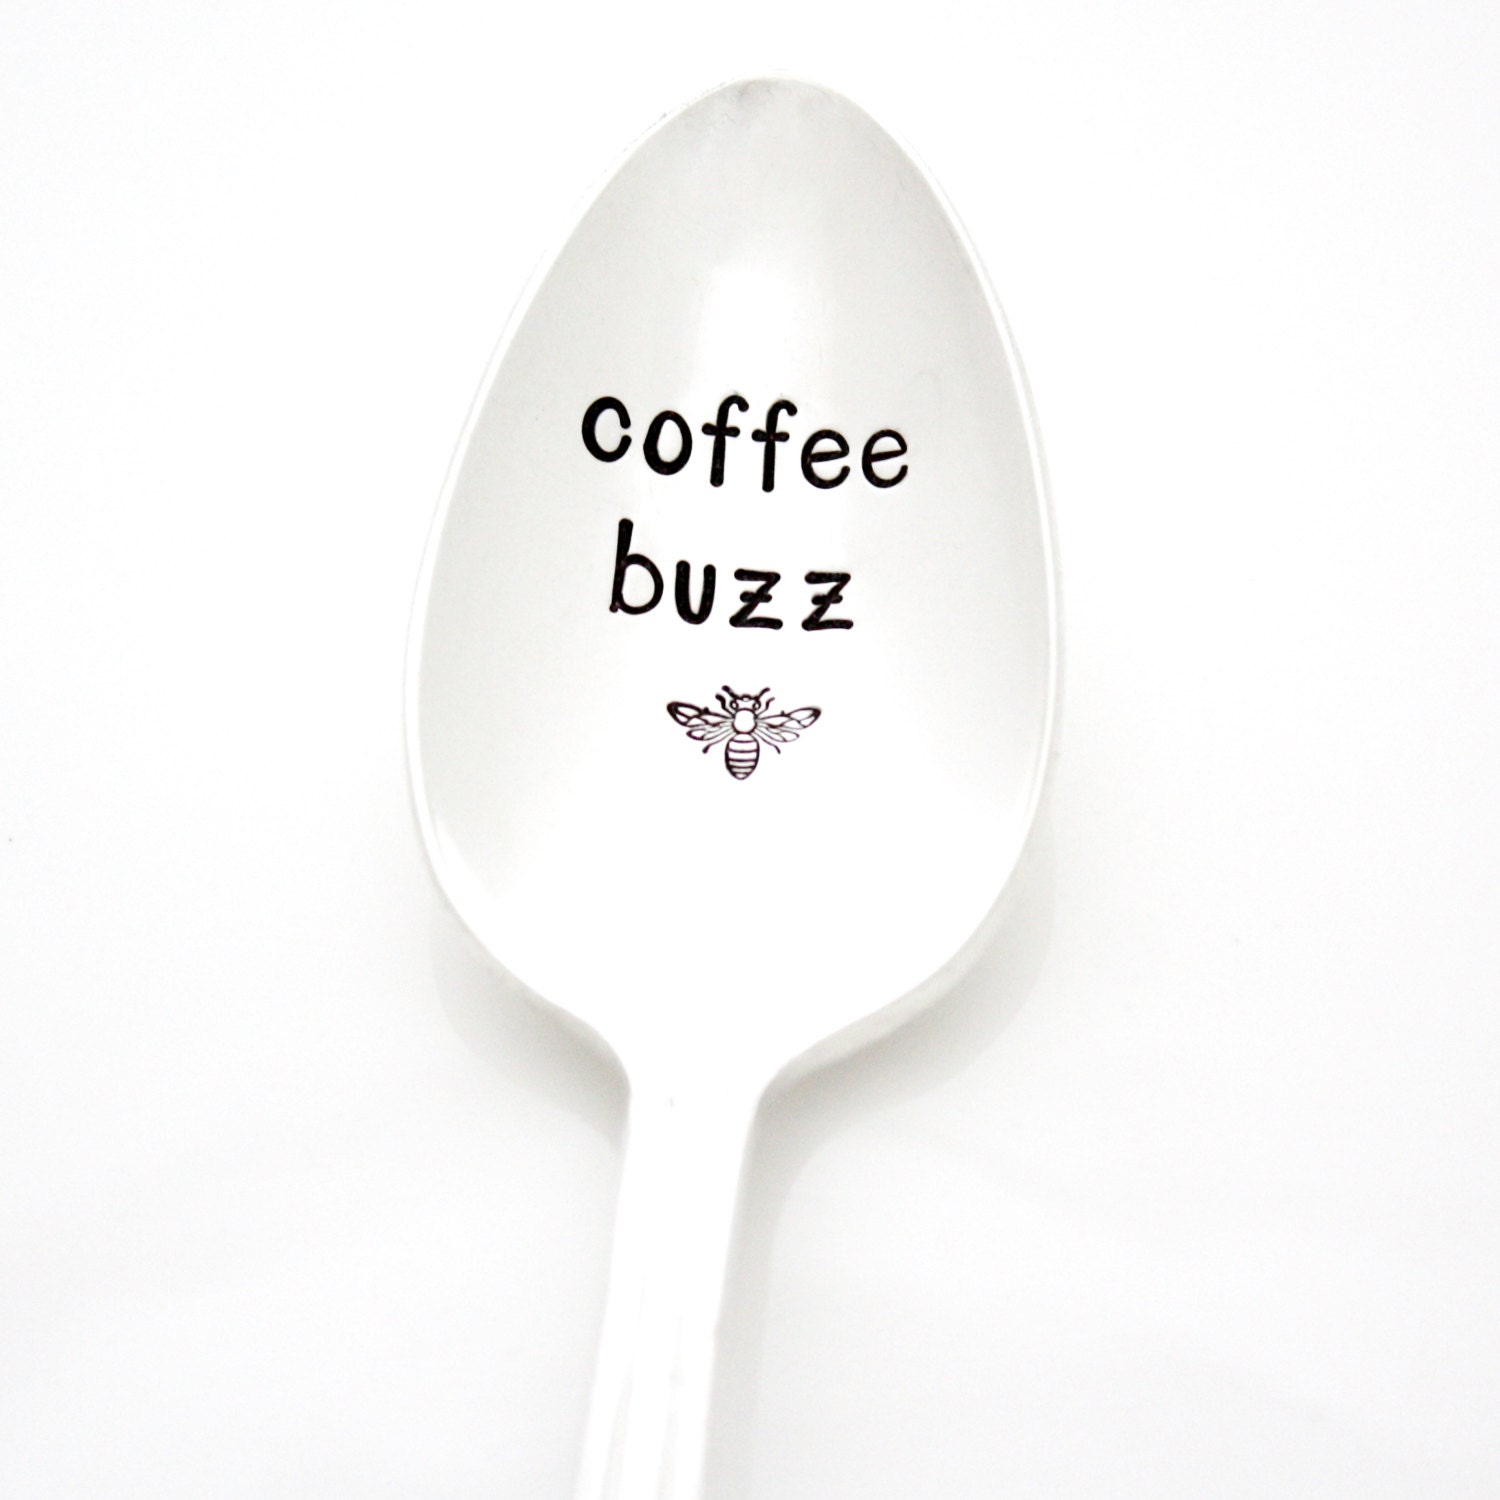 coffee coffee buzz buzz buzz